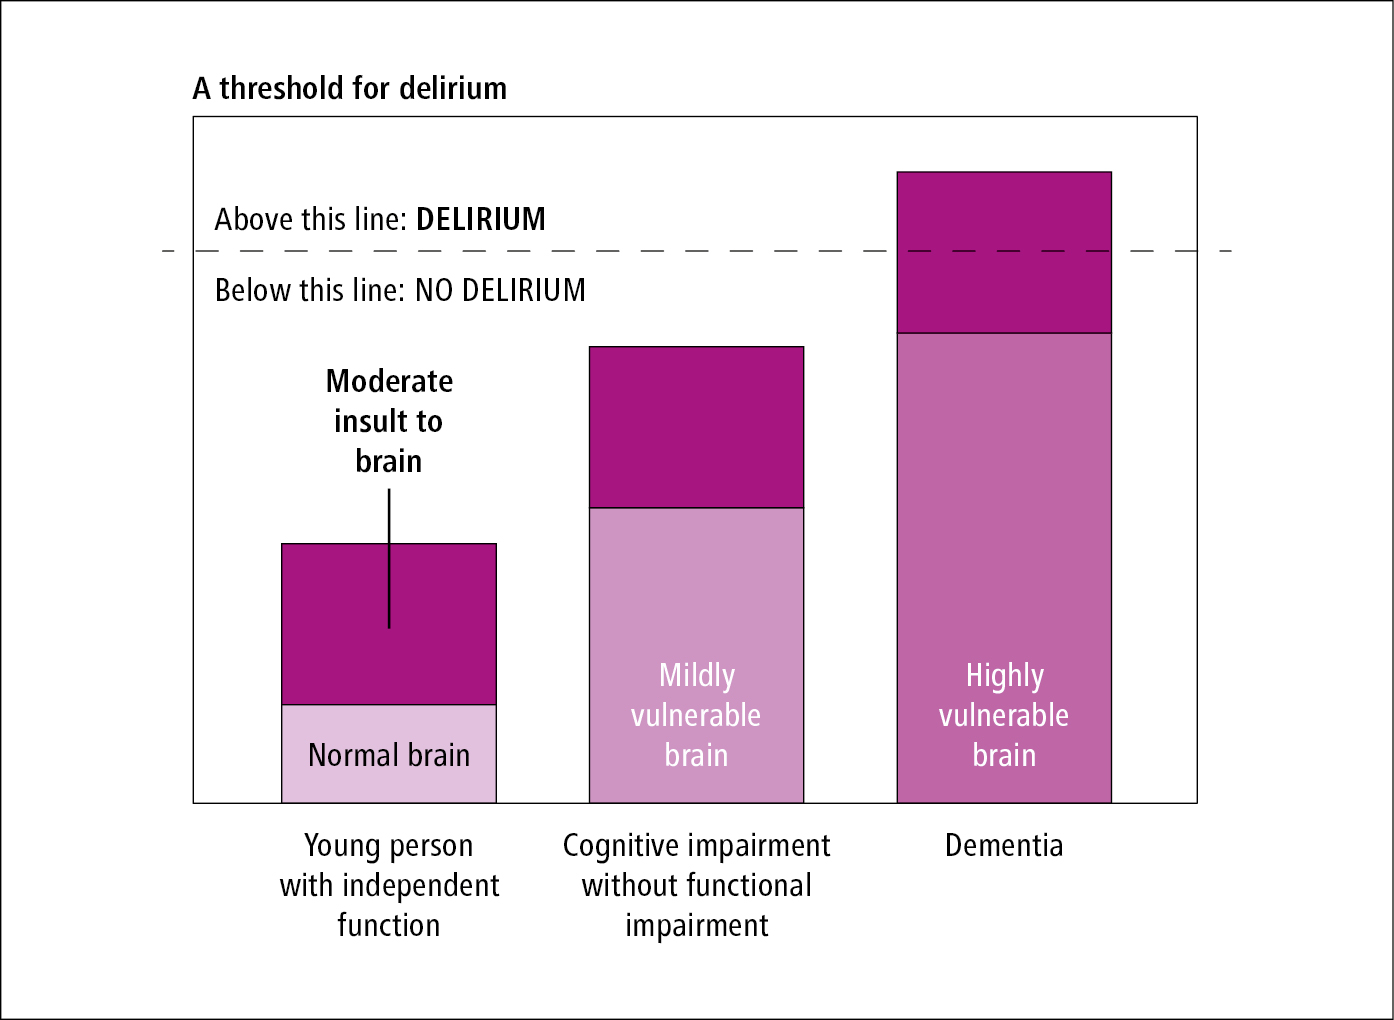 Figure 031_1883.  Framework for delirium risk. 